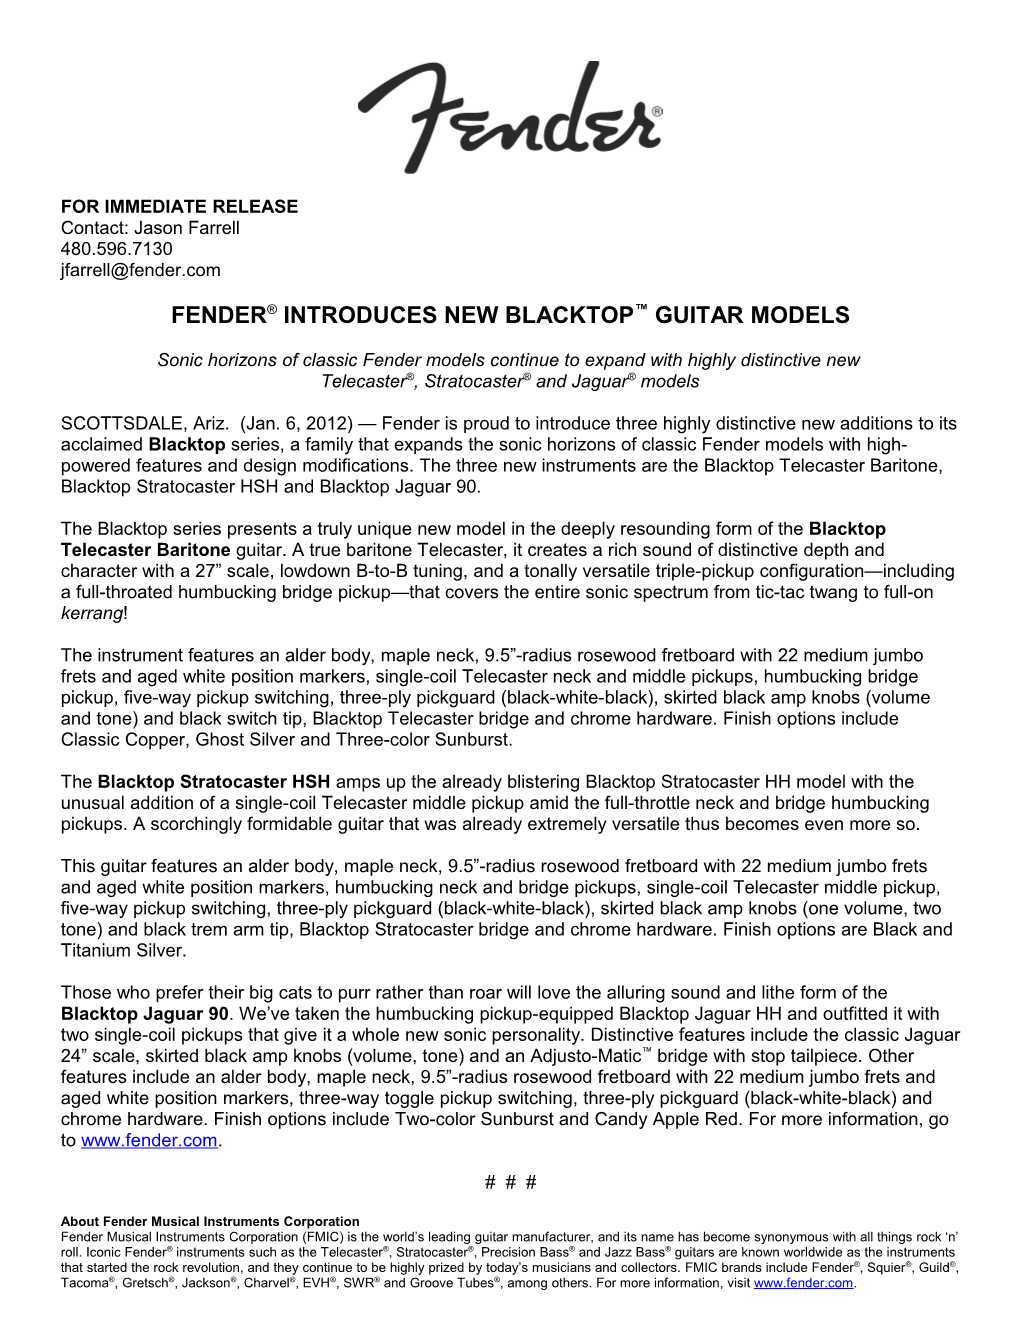 Fender Introduces New Blacktop Guitar Models